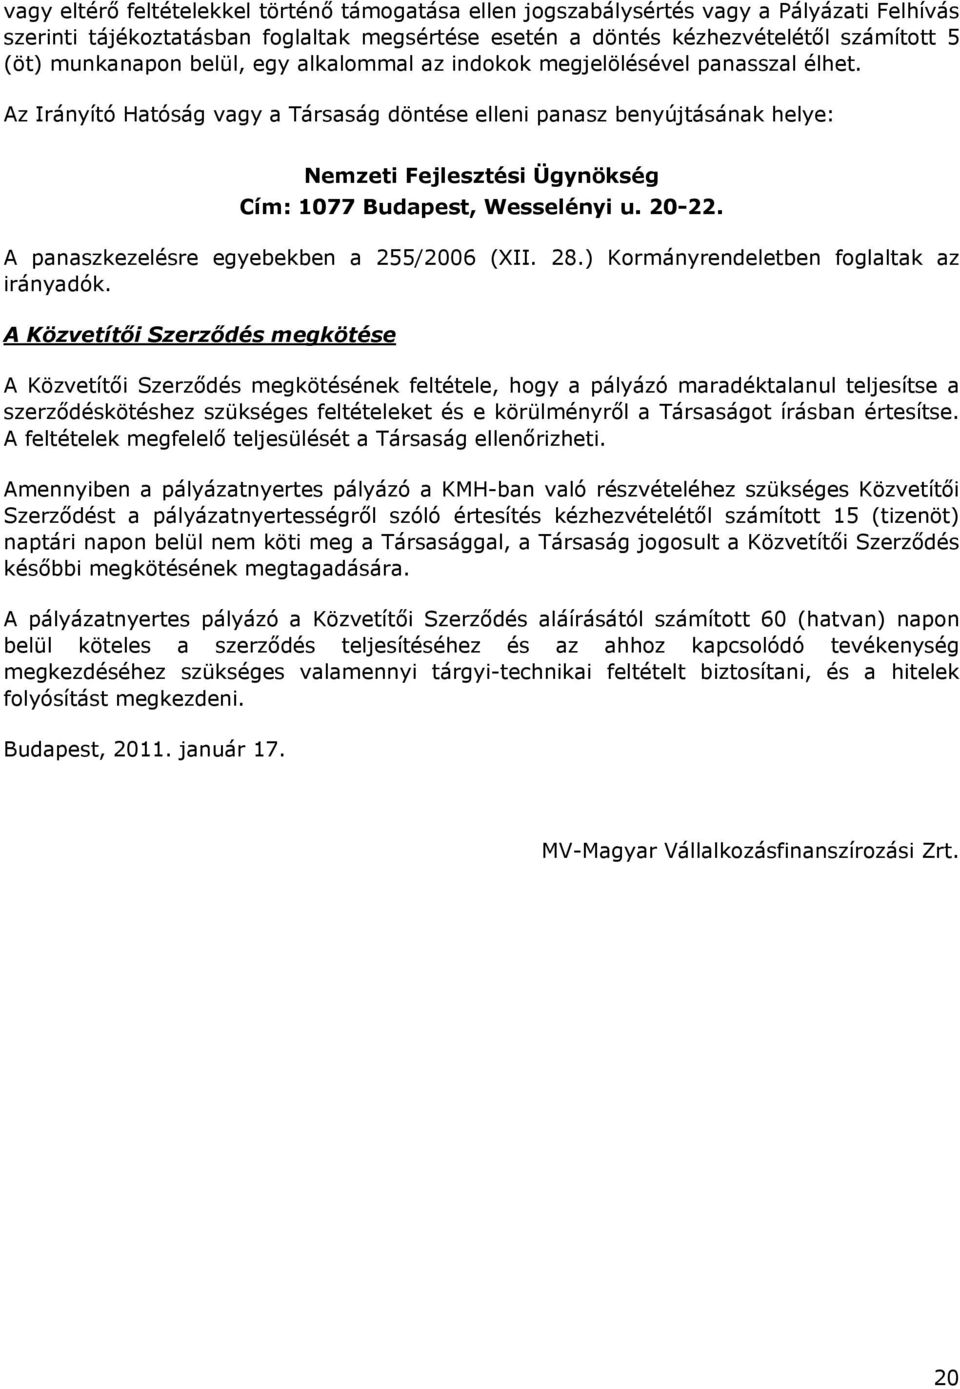 Az Irányító Hatóság vagy a Társaság döntése elleni panasz benyújtásának helye: Nemzeti Fejlesztési Ügynökség Cím: 1077 Budapest, Wesselényi u. 20-22. A panaszkezelésre egyebekben a 255/2006 (XII. 28.